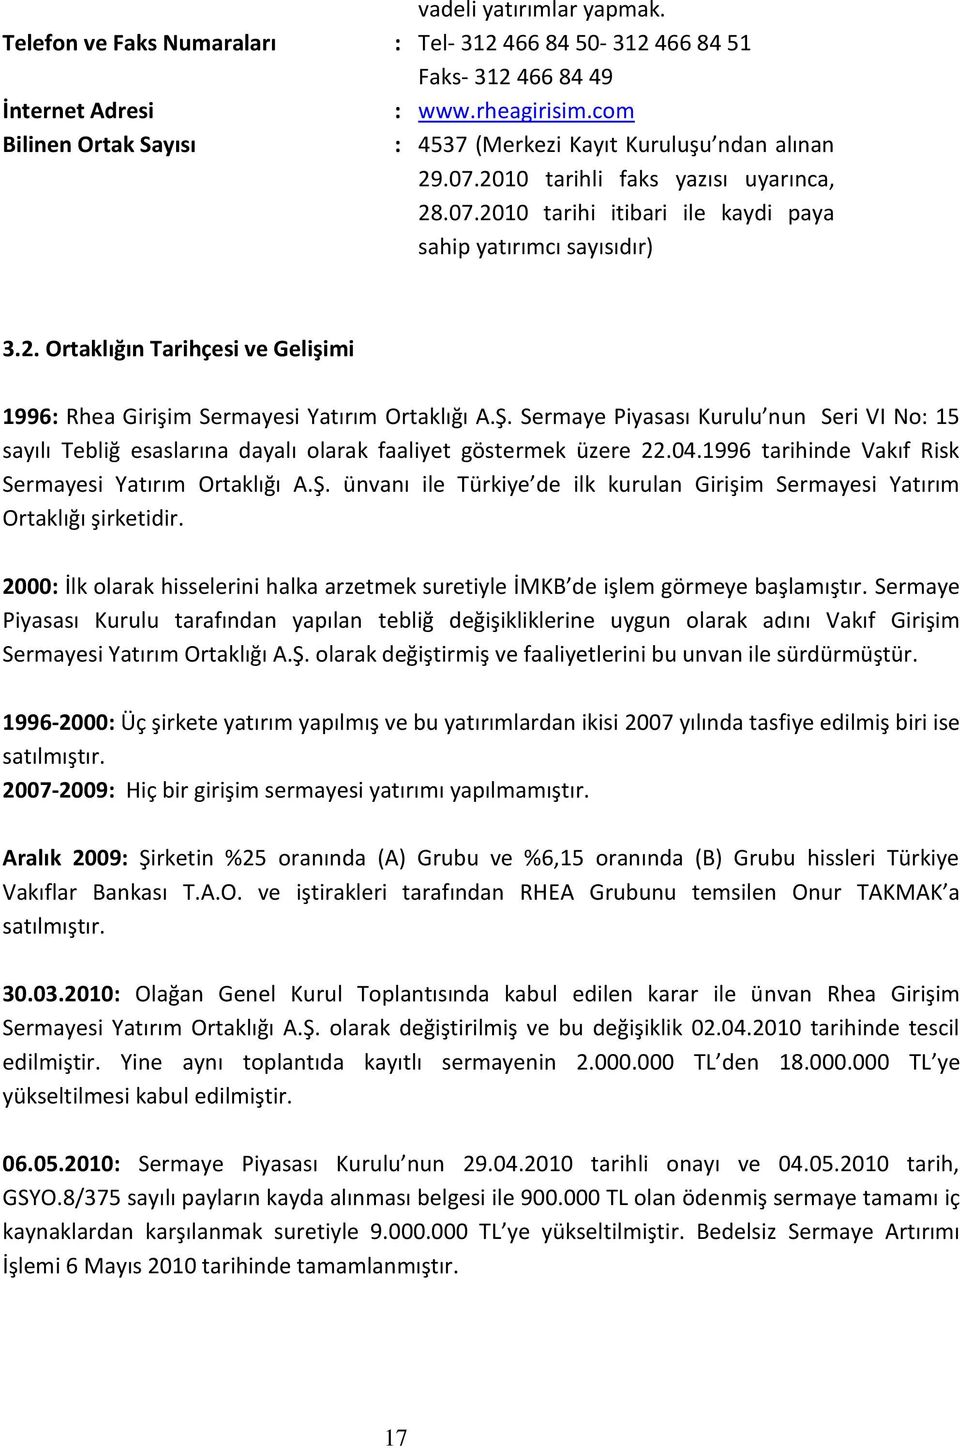 Ş. Sermaye Piyasası Kurulu nun Seri VI No: 15 sayılı Tebliğ esaslarına dayalı olarak faaliyet göstermek üzere 22.04.1996 tarihinde Vakıf Risk Sermayesi Yatırım Ortaklığı A.Ş. ünvanı ile Türkiye de ilk kurulan Girişim Sermayesi Yatırım Ortaklığı şirketidir.